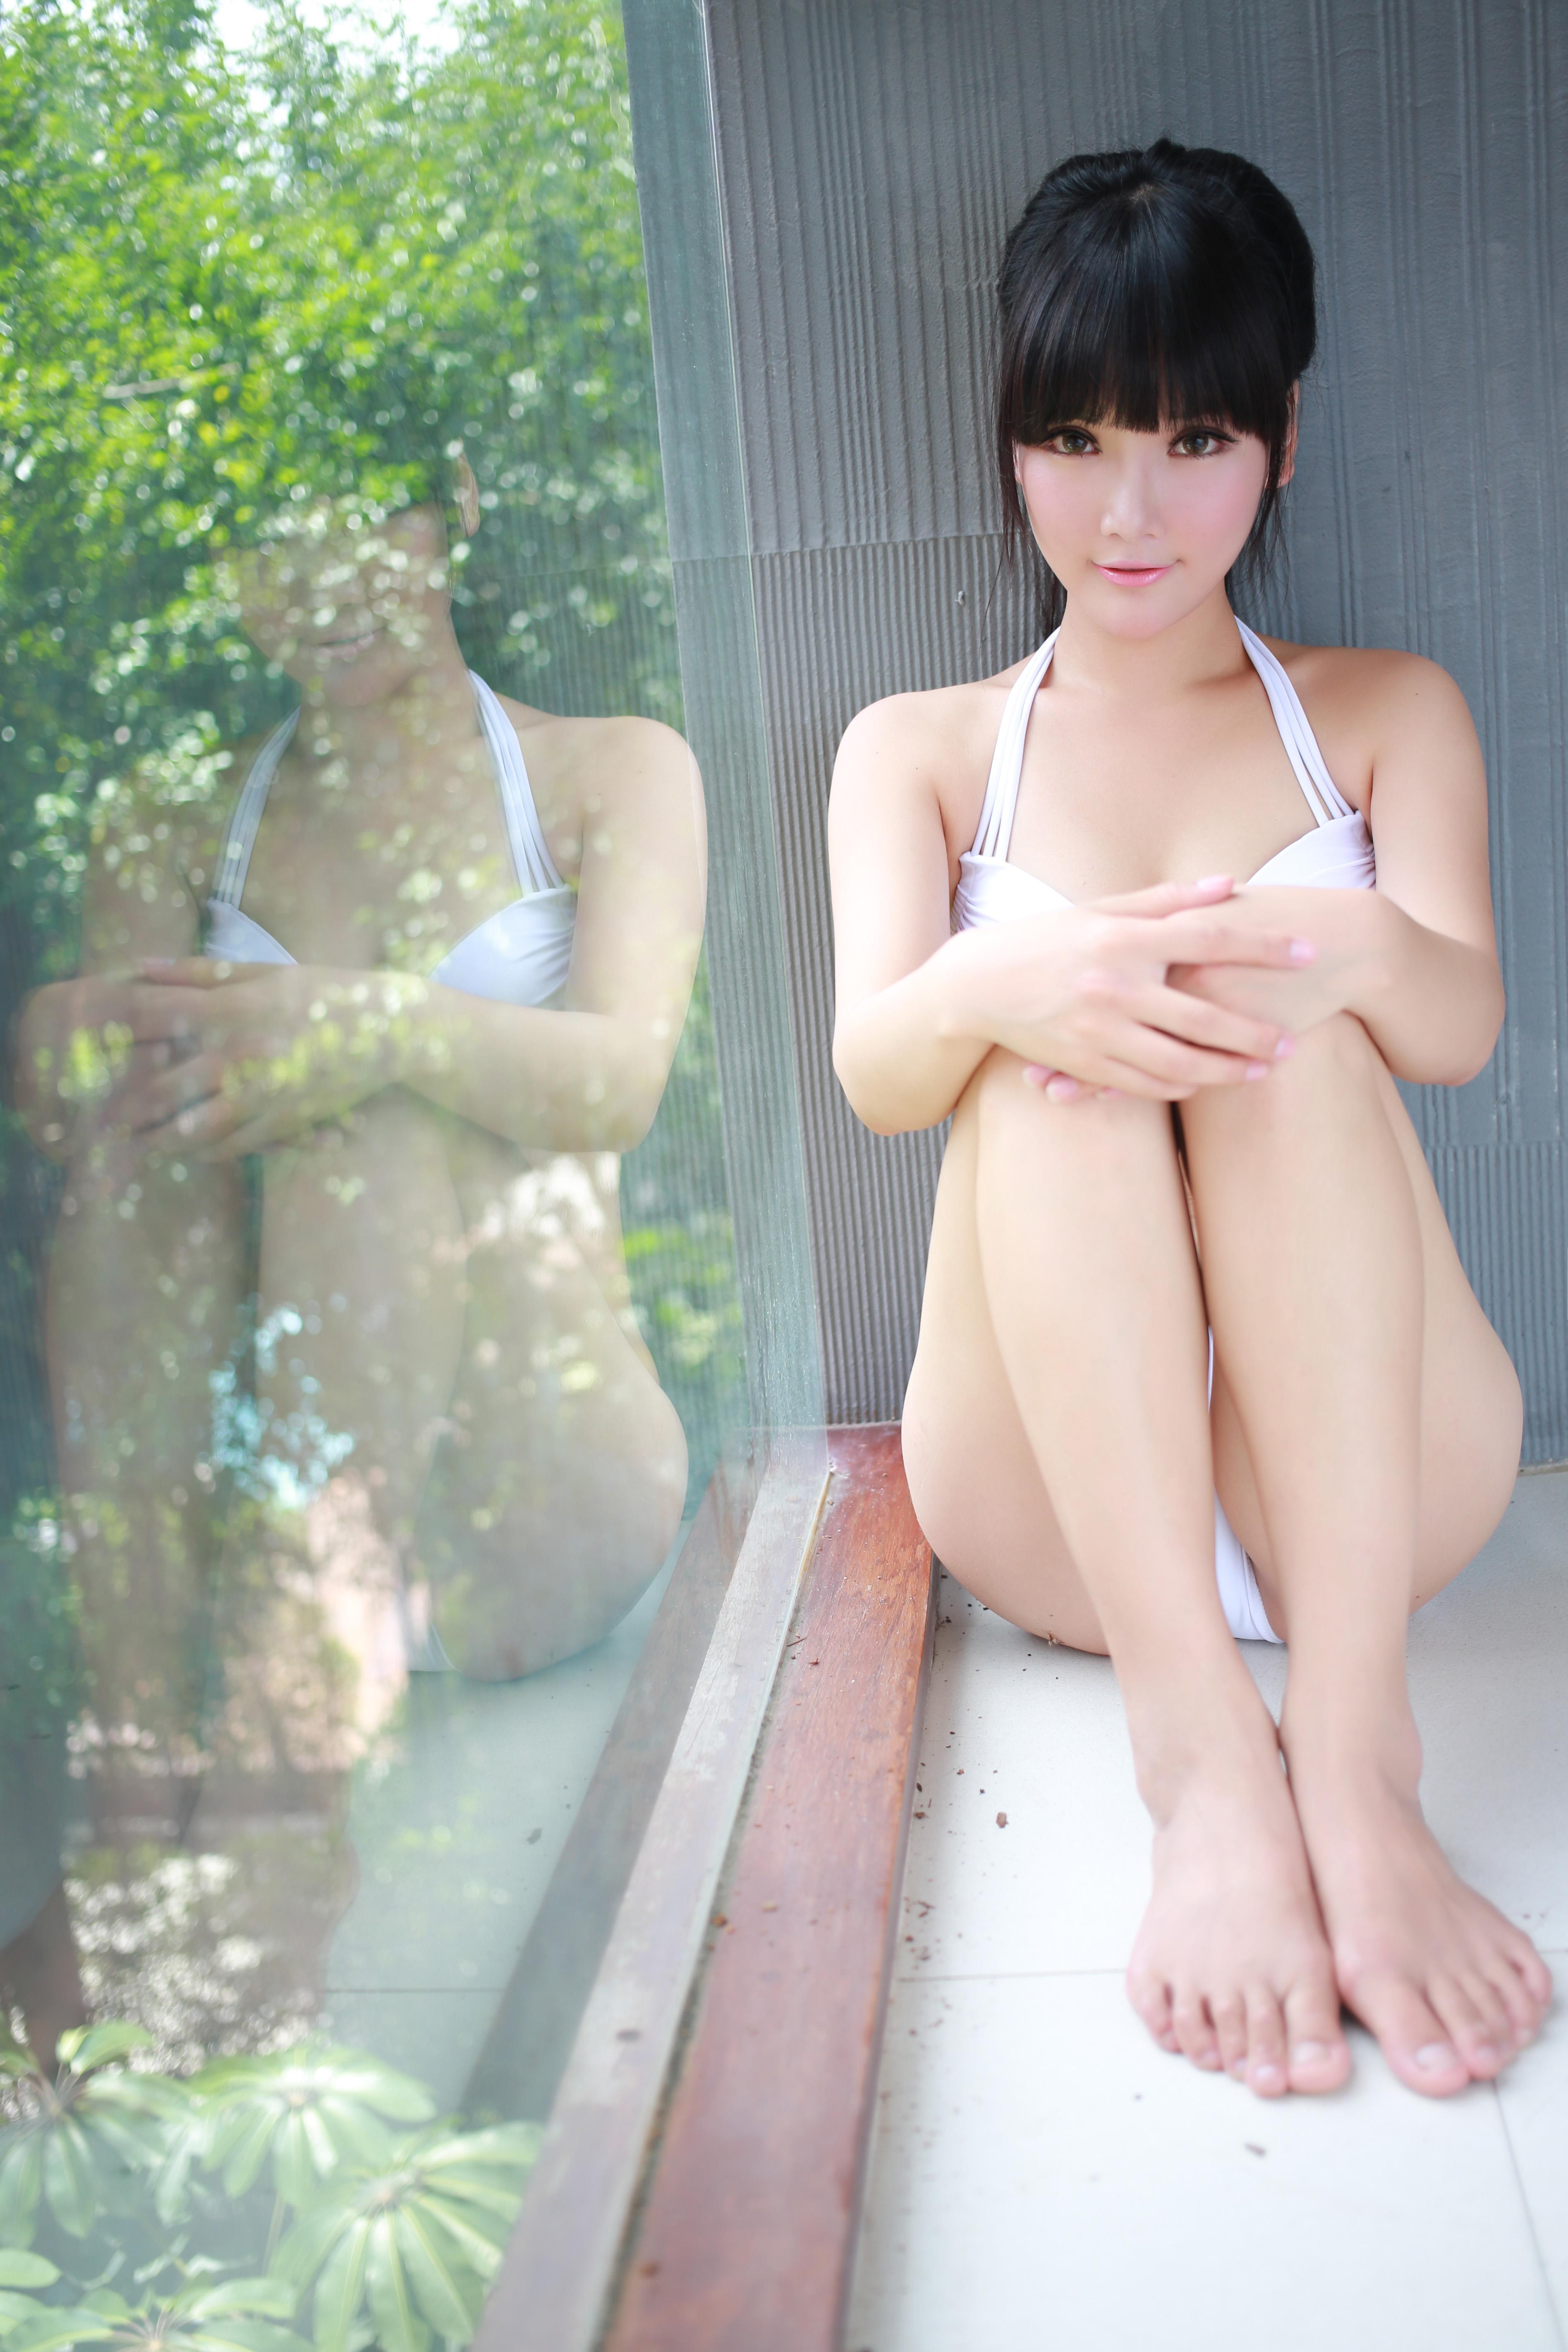 [MYGIRL美媛馆]旧刊 2014年7月泰国7位女神比基尼泳装写真超清合辑预览 2014-07-17 SP-04,